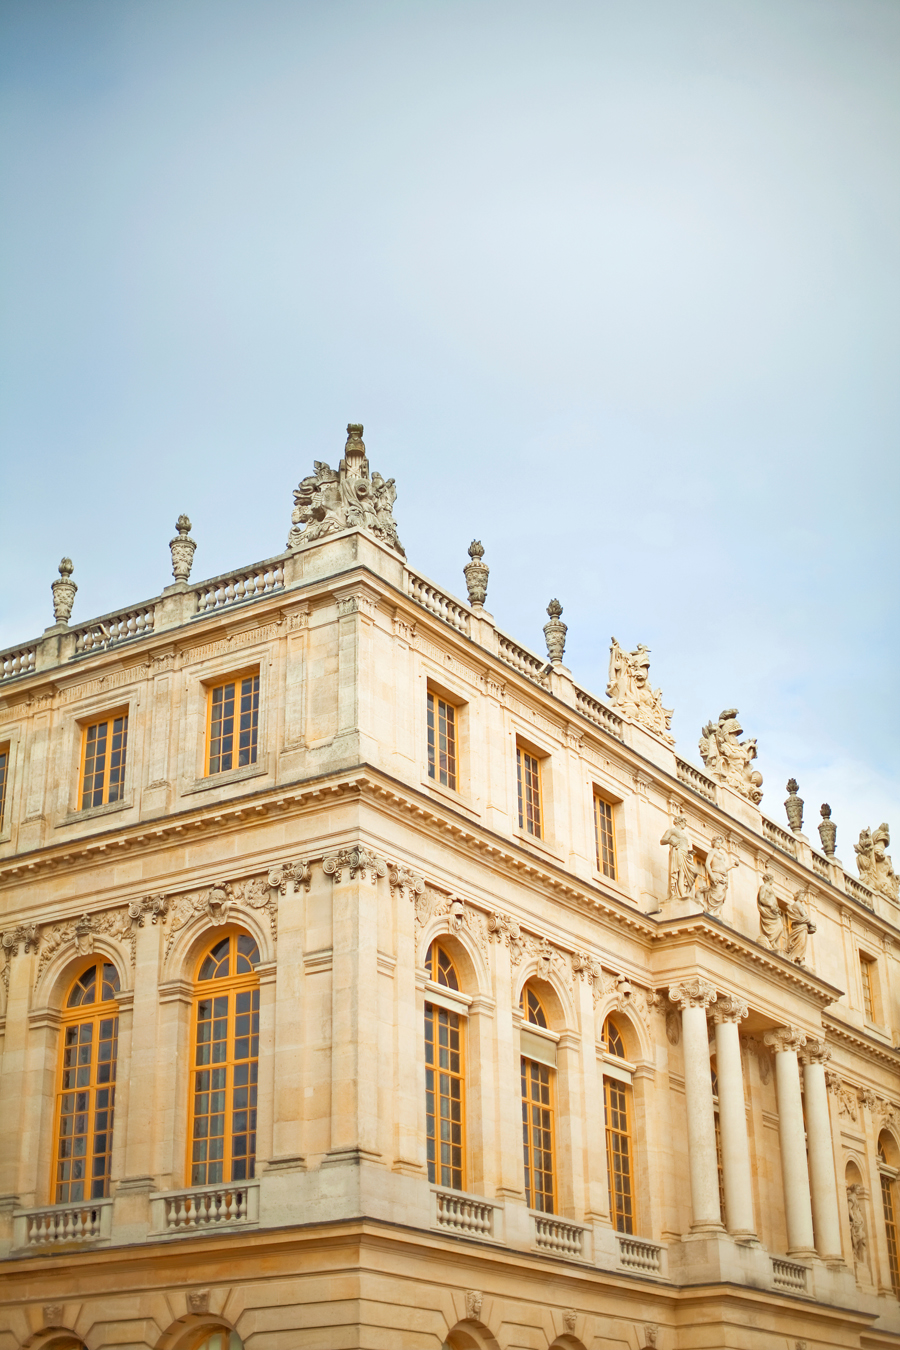 Historic Building in Versailles